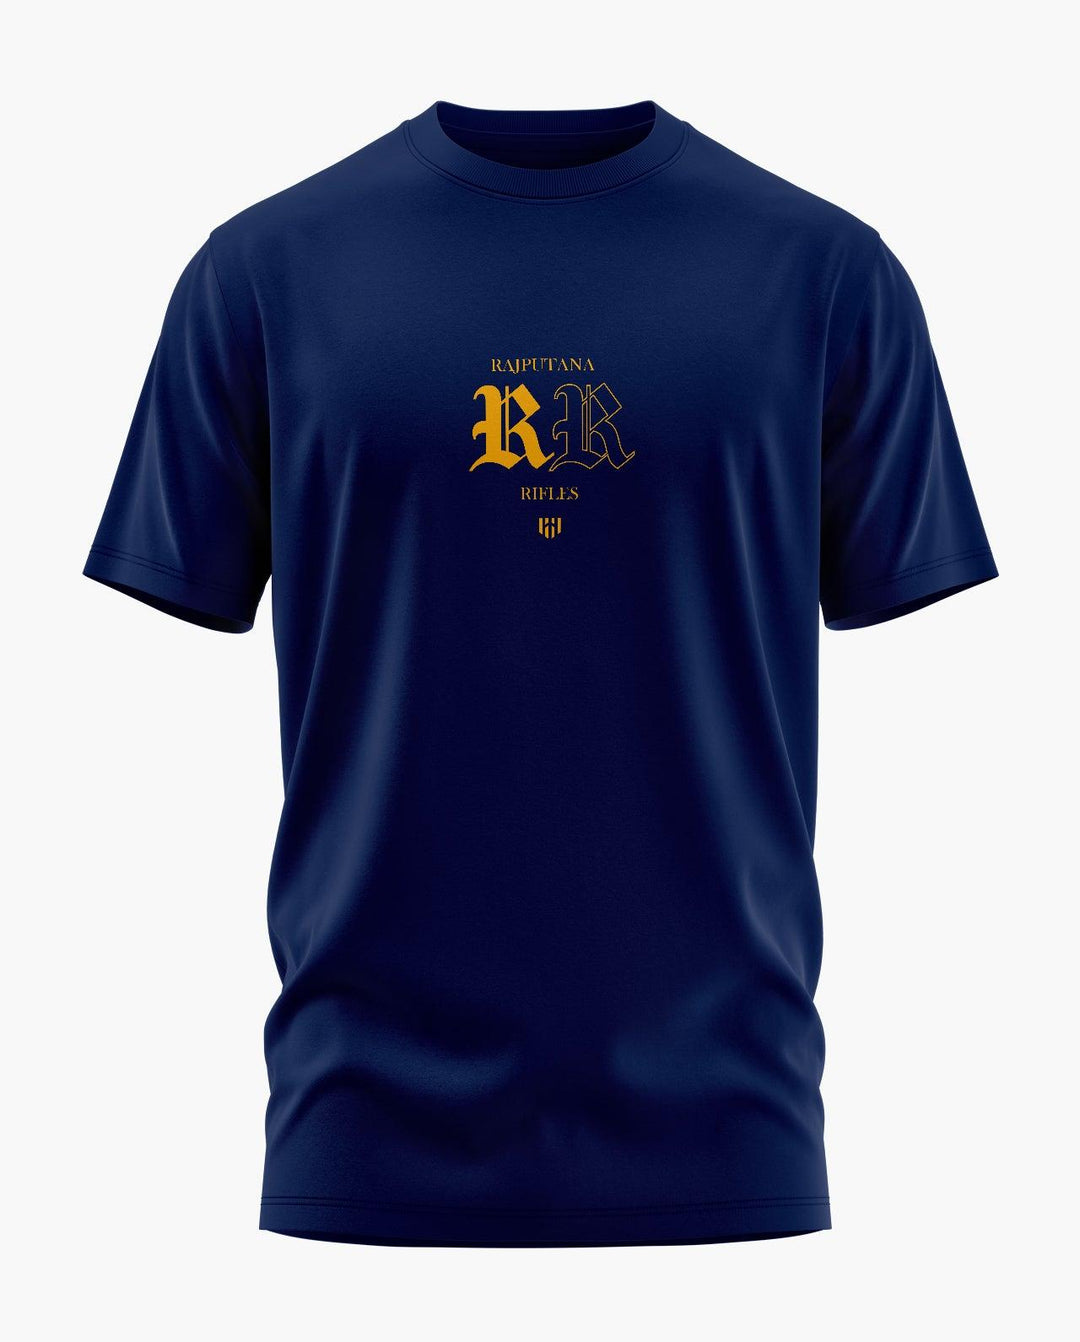 Rajputana Rifles Aero Armour T-Shirt - Aero Armour